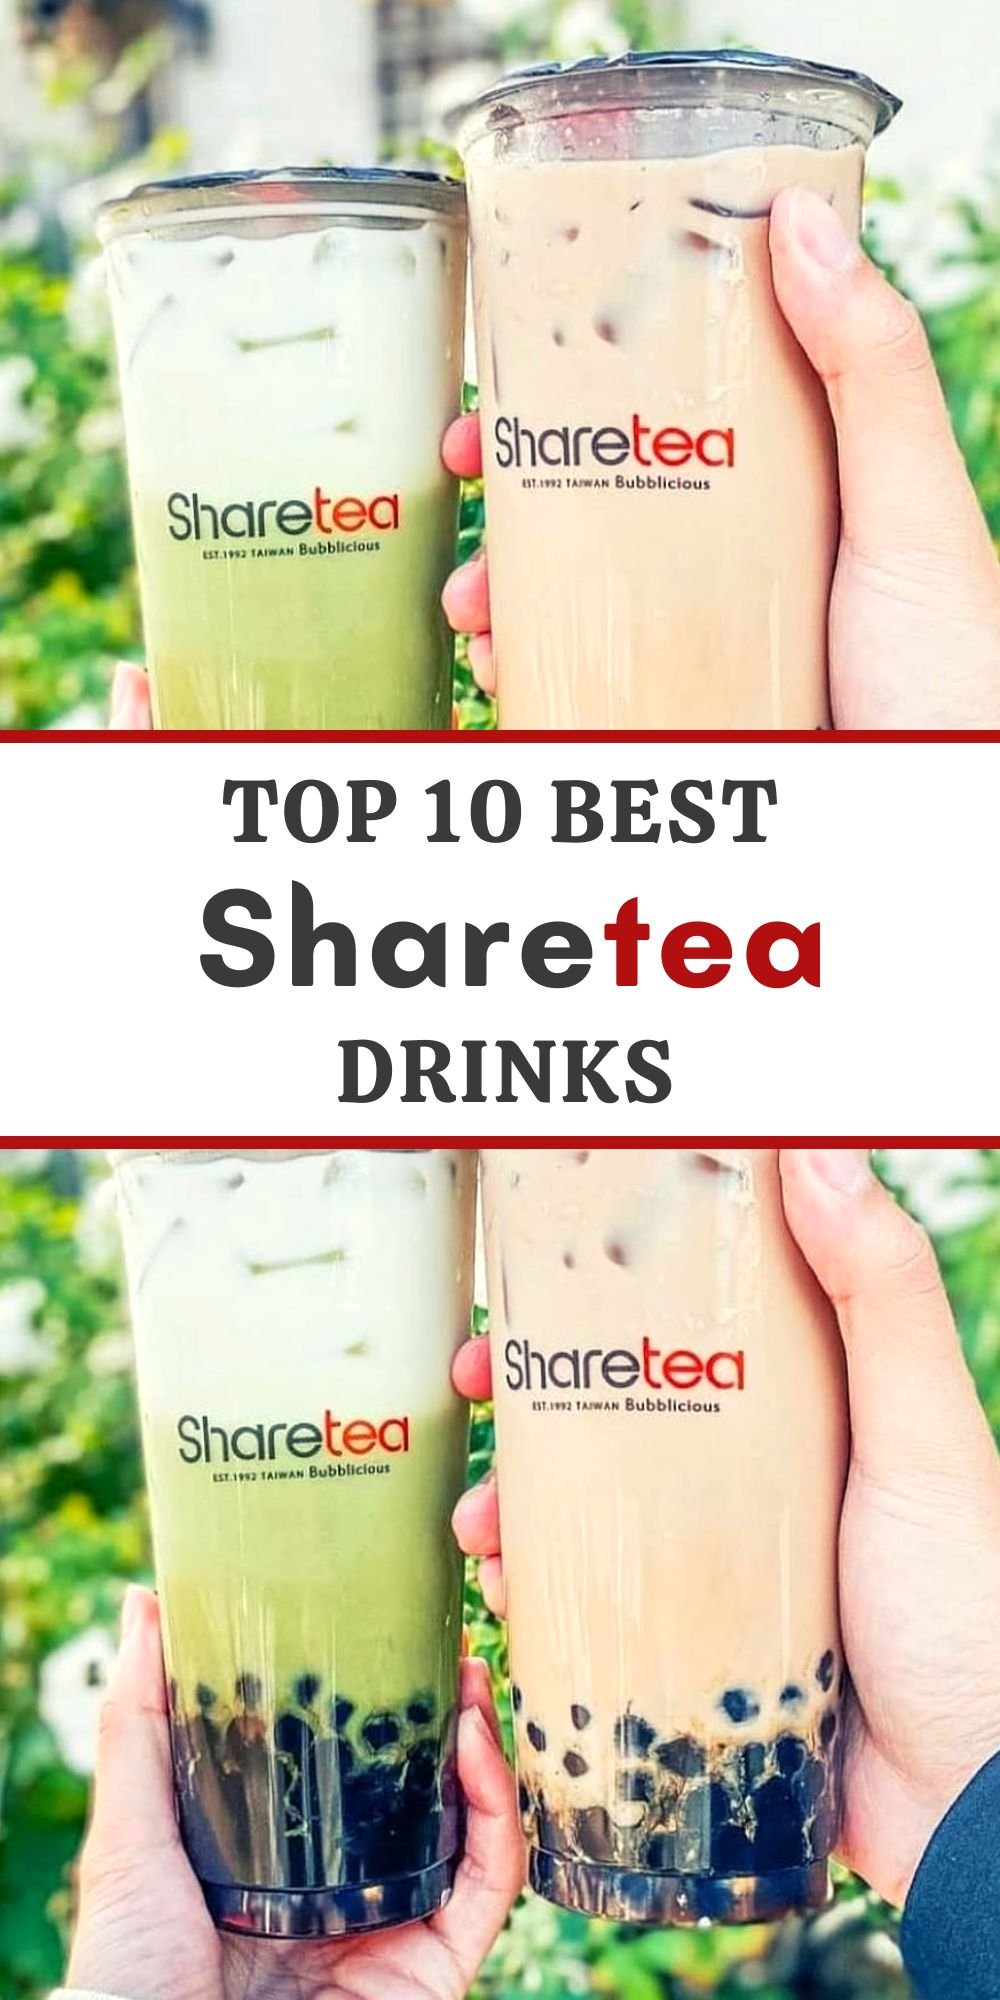 Sharetea drinks